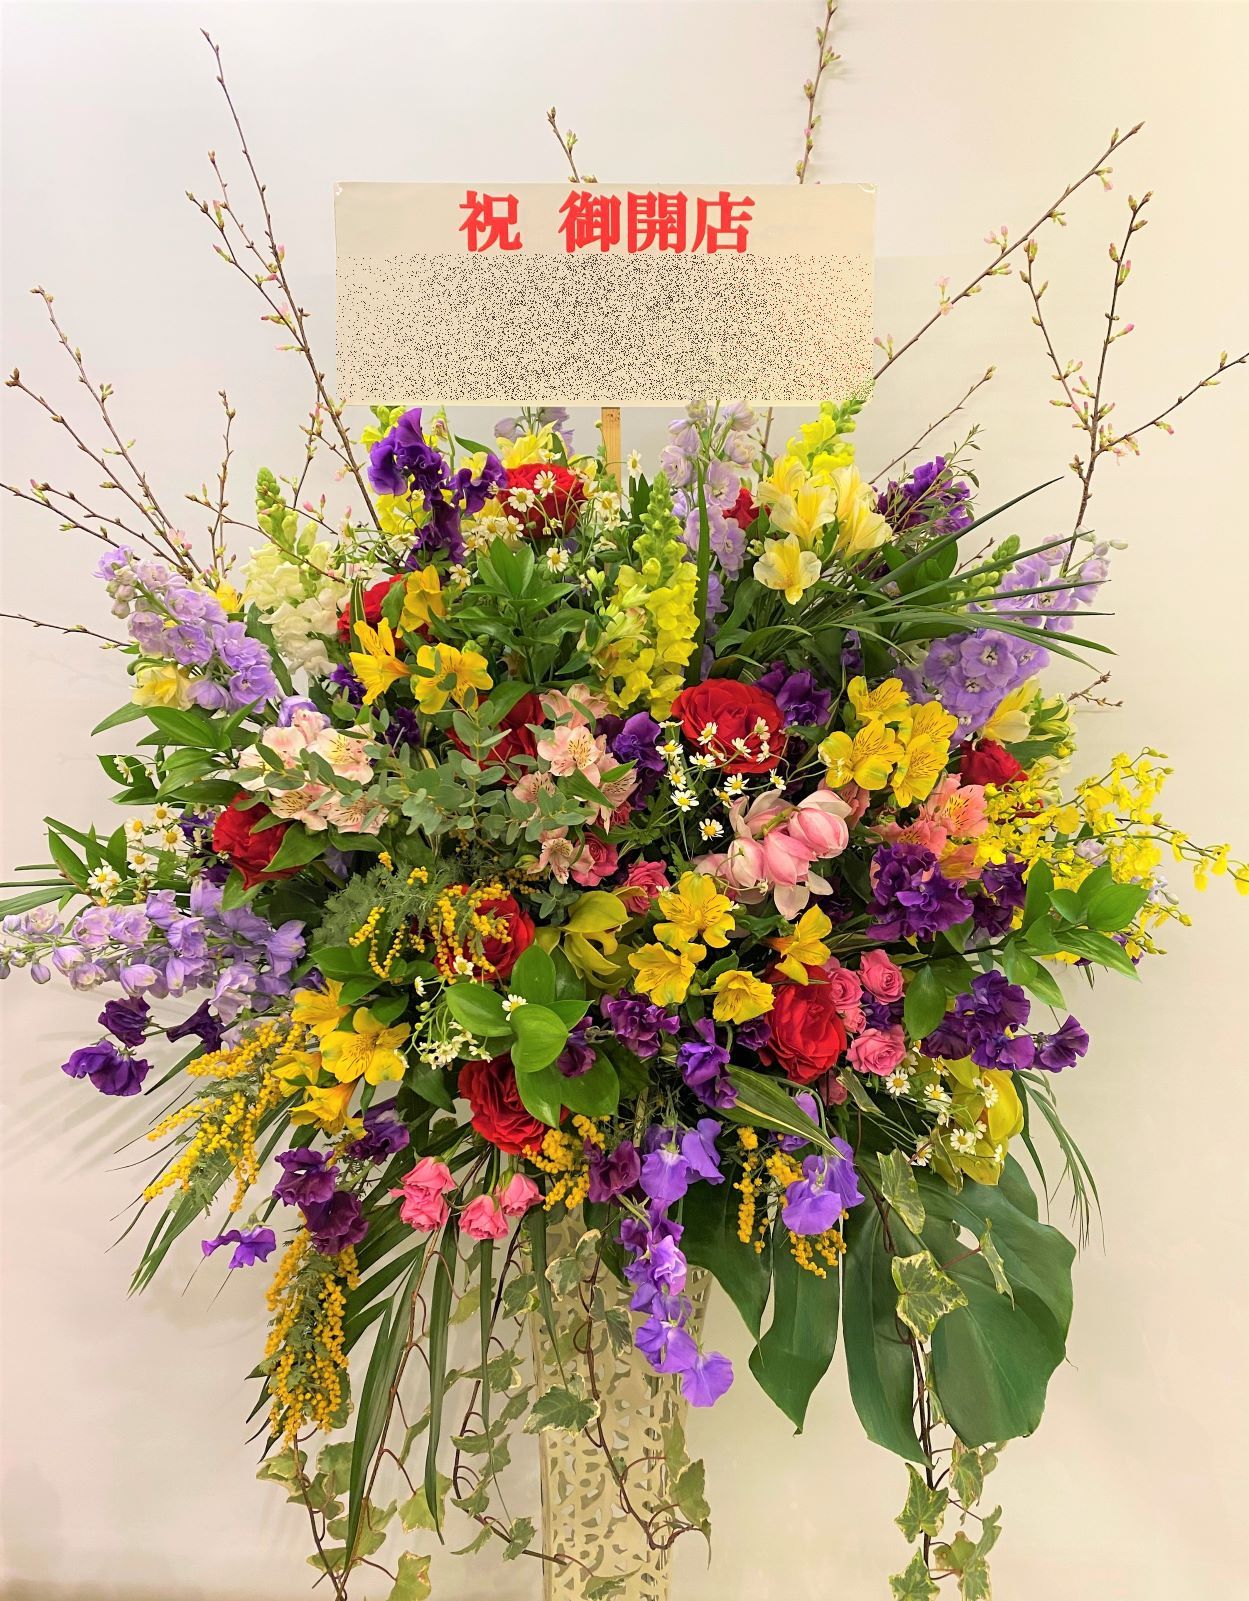 横浜市神奈川区松本町へスタンド花を配達しました。【横浜花屋の花束・スタンド花・胡蝶蘭・バルーン・アレンジメント配達事例870】